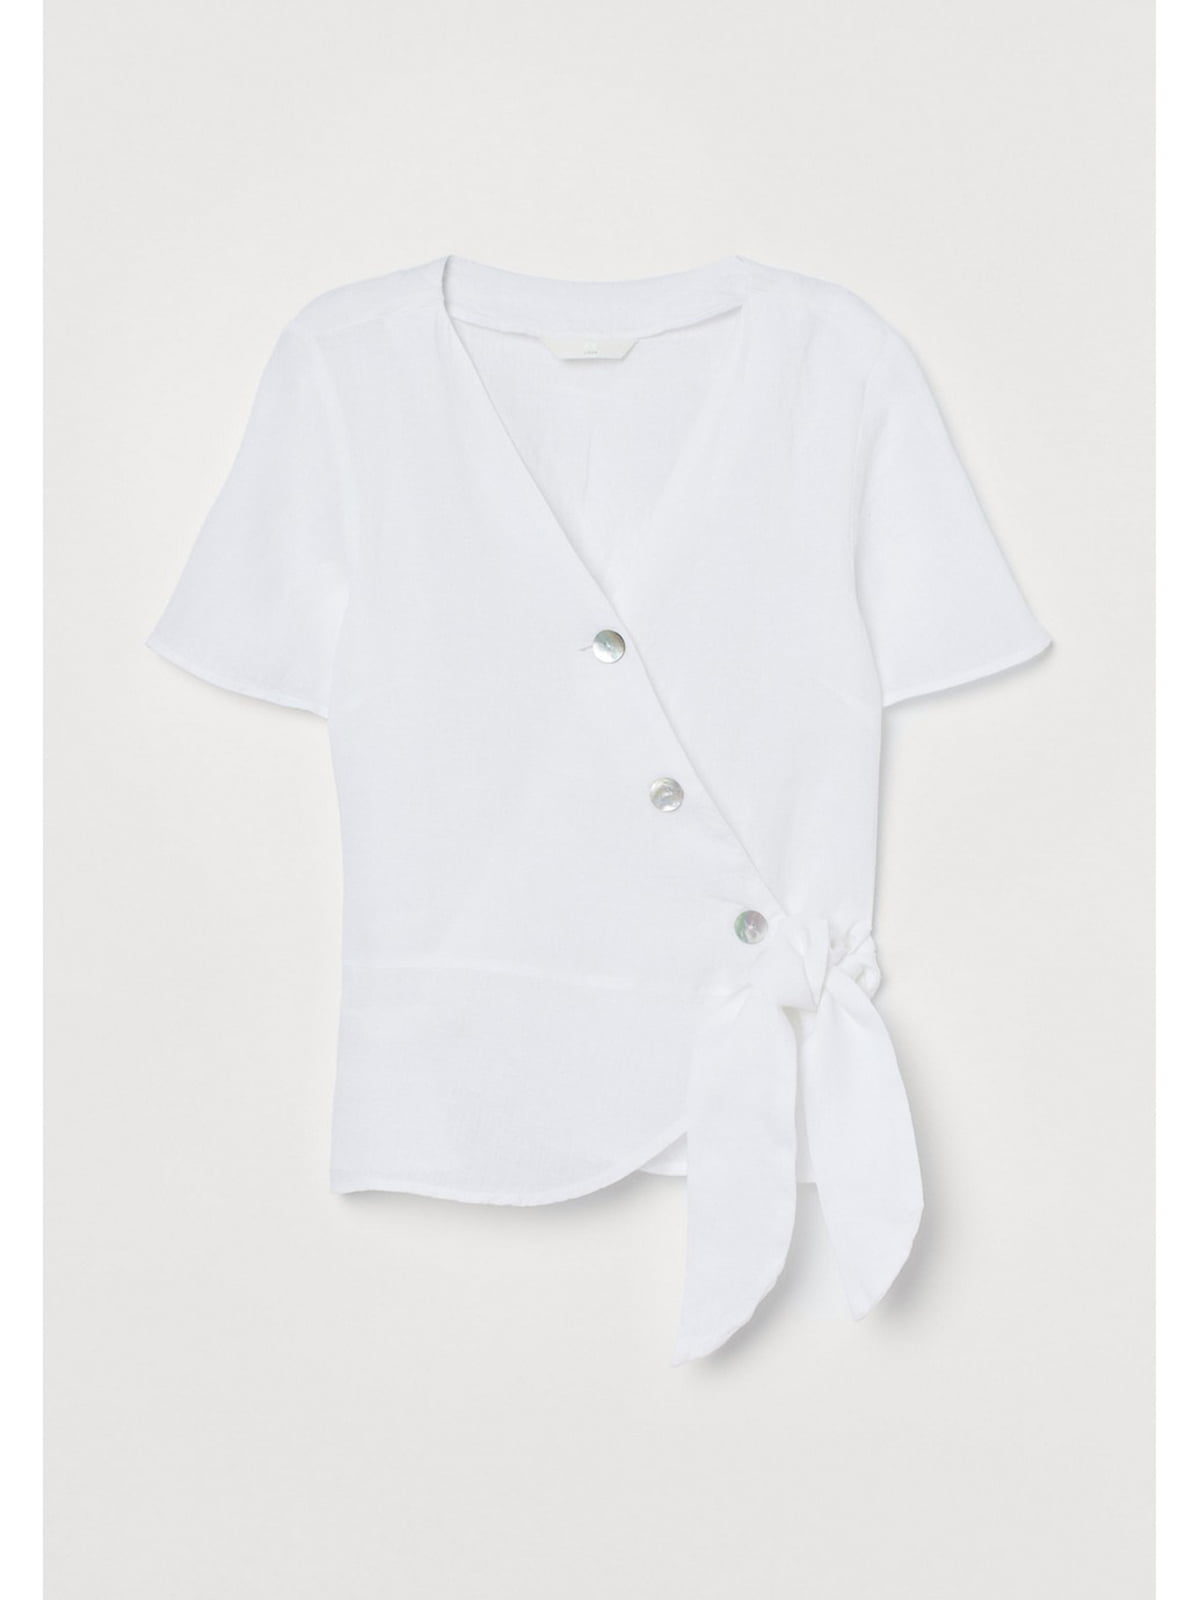 Блуза біла | 5712350